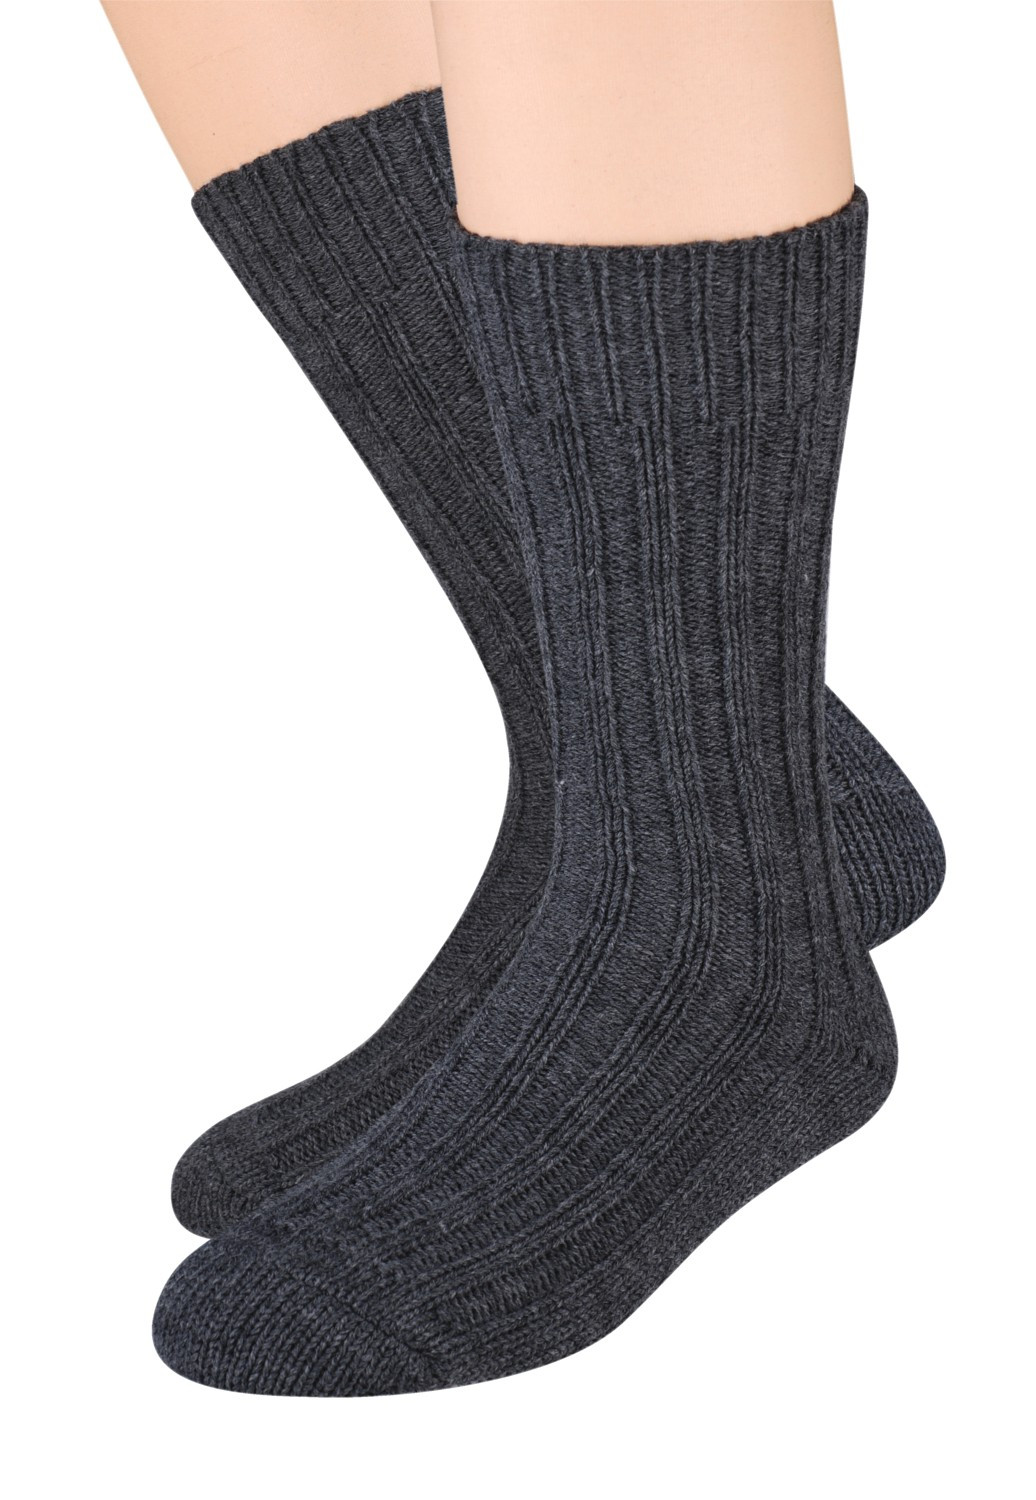 Pánské vlněné ponožky Steven art.085 41-46 tmavě modrá 41-43